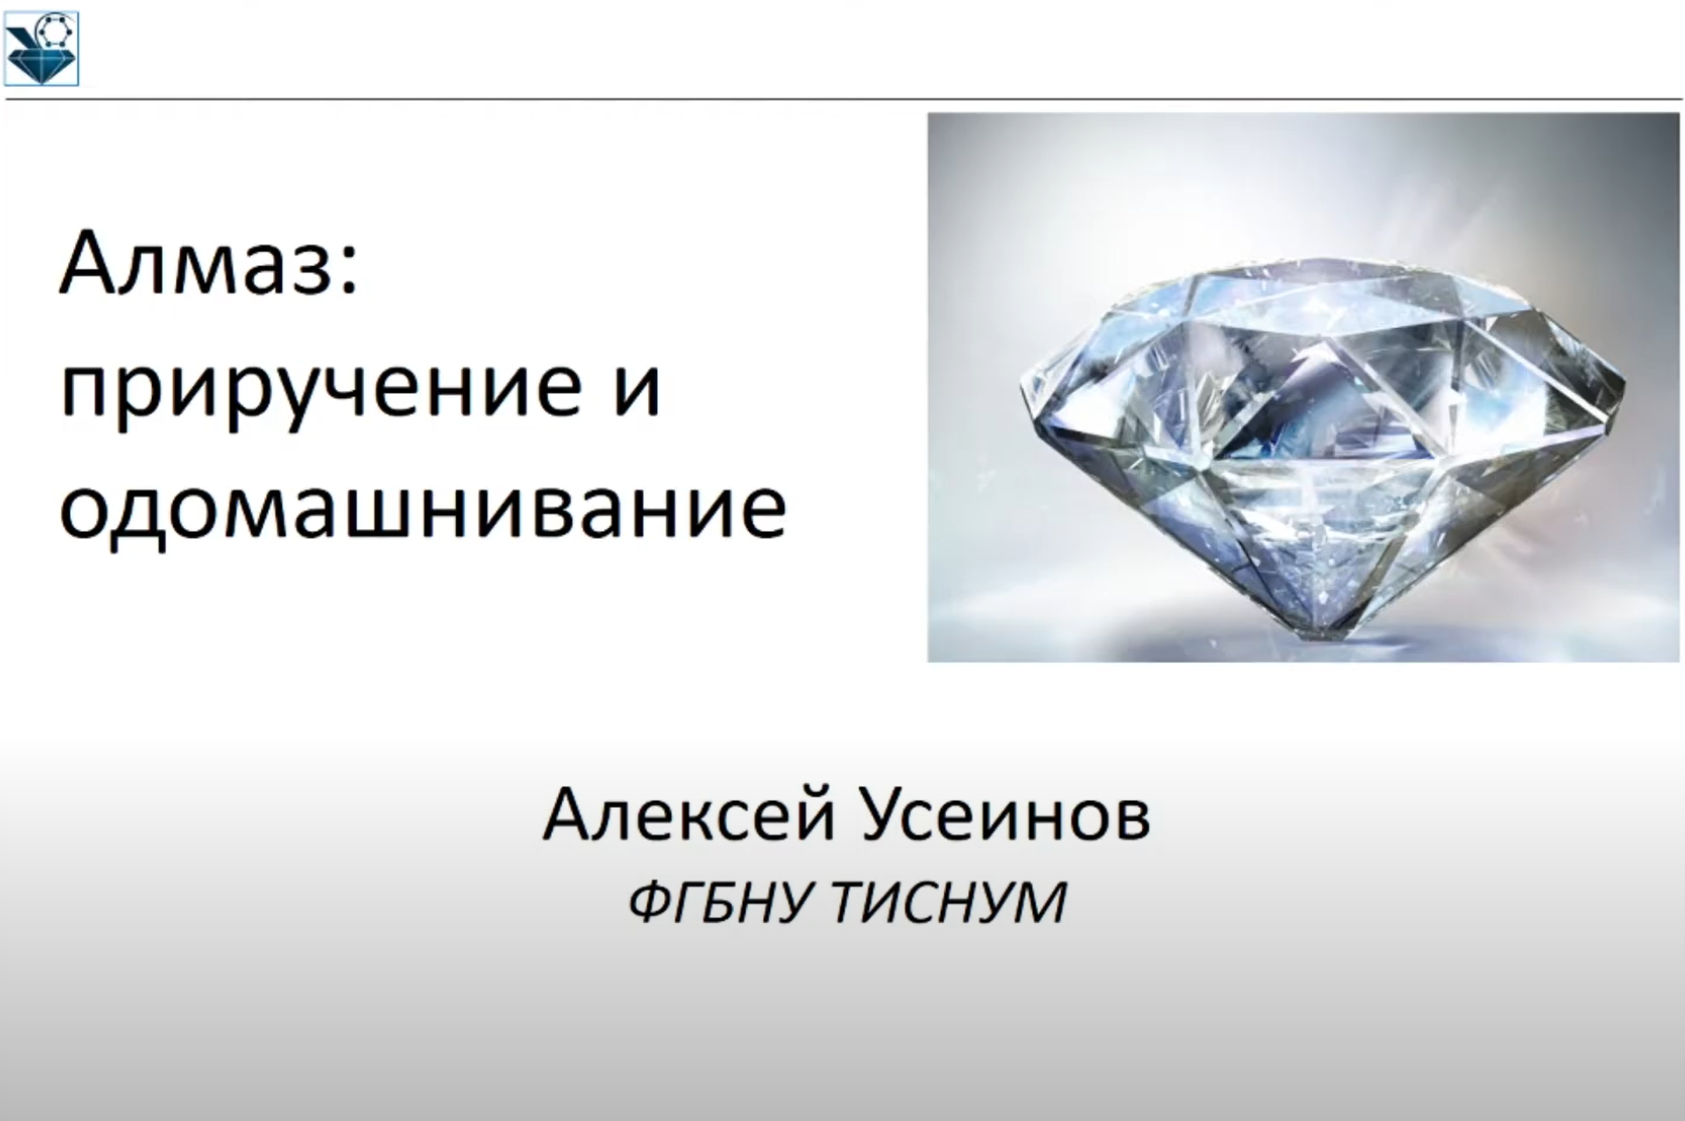 Алексей Усеинов: Алмаз: приручение и одомашнивание